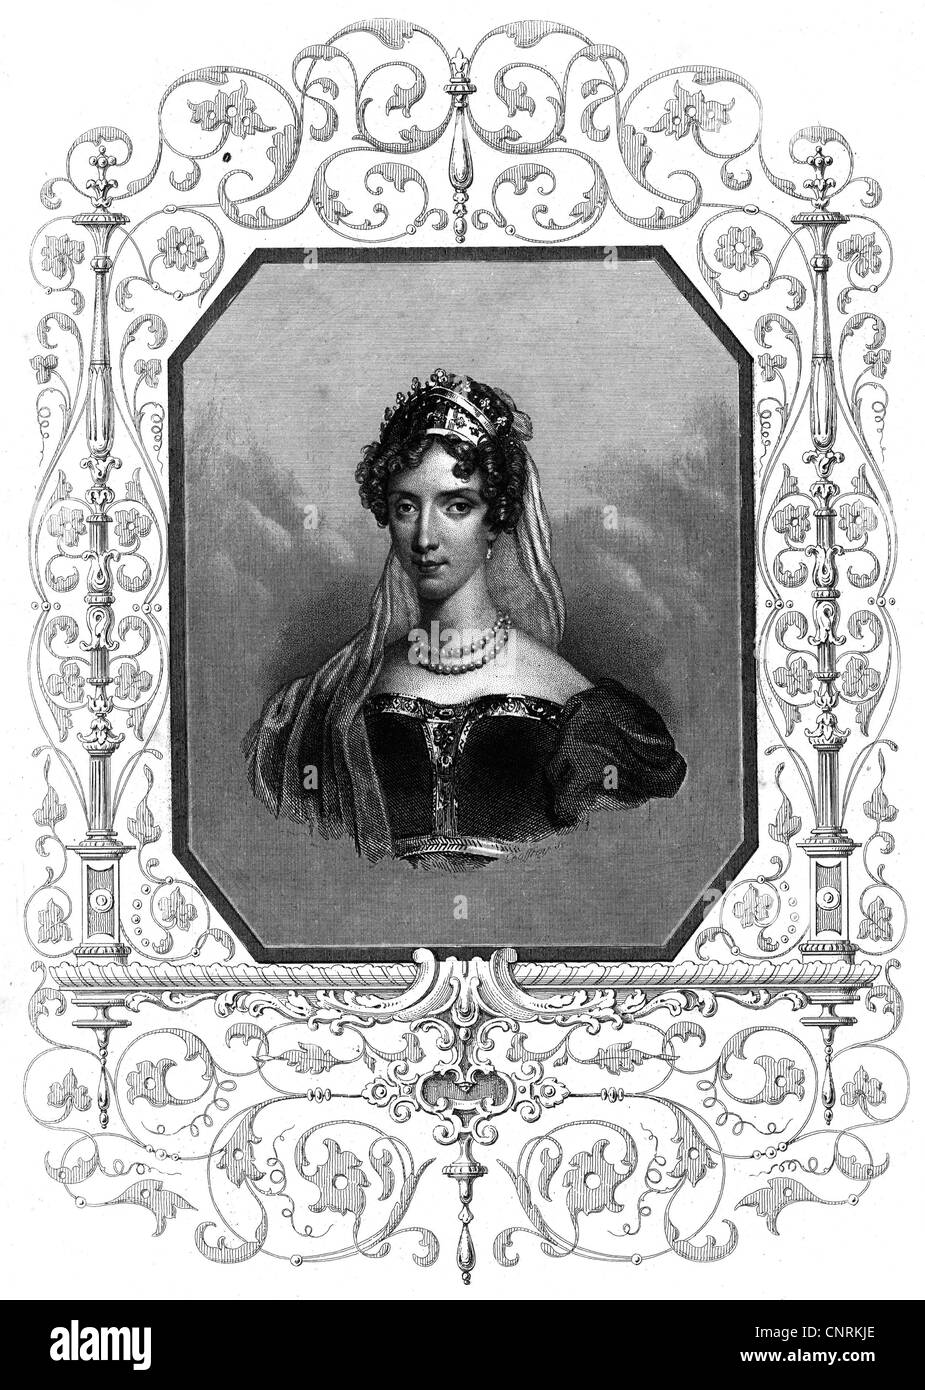 Marie Caroline, 5.11.1798 - 16.4.1870, la Duchesse de Berry 1816 - 1820, portrait, gravure sur acier imprimé par Mangenon, Paris, l'artiste n'a pas d'auteur pour être effacé Banque D'Images